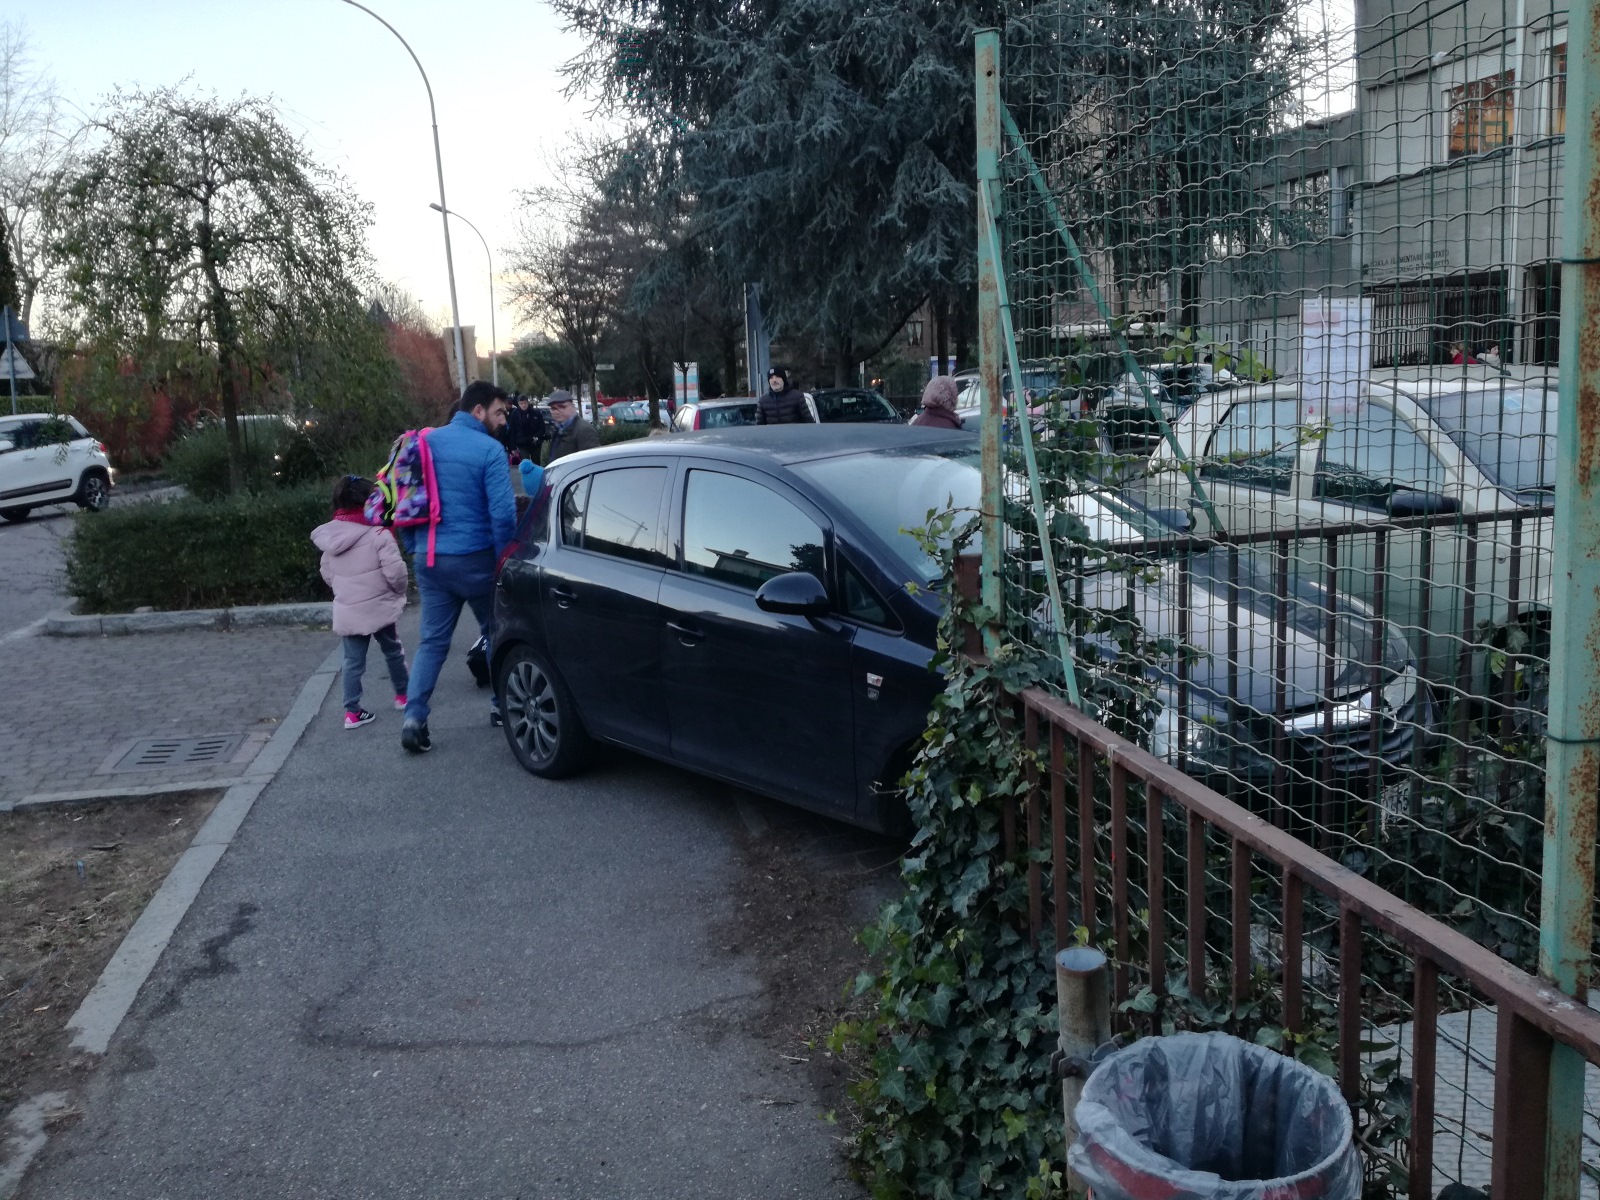 Parcheggio selvaggio davanti alla scuola, bambini rischiano di essere travolti